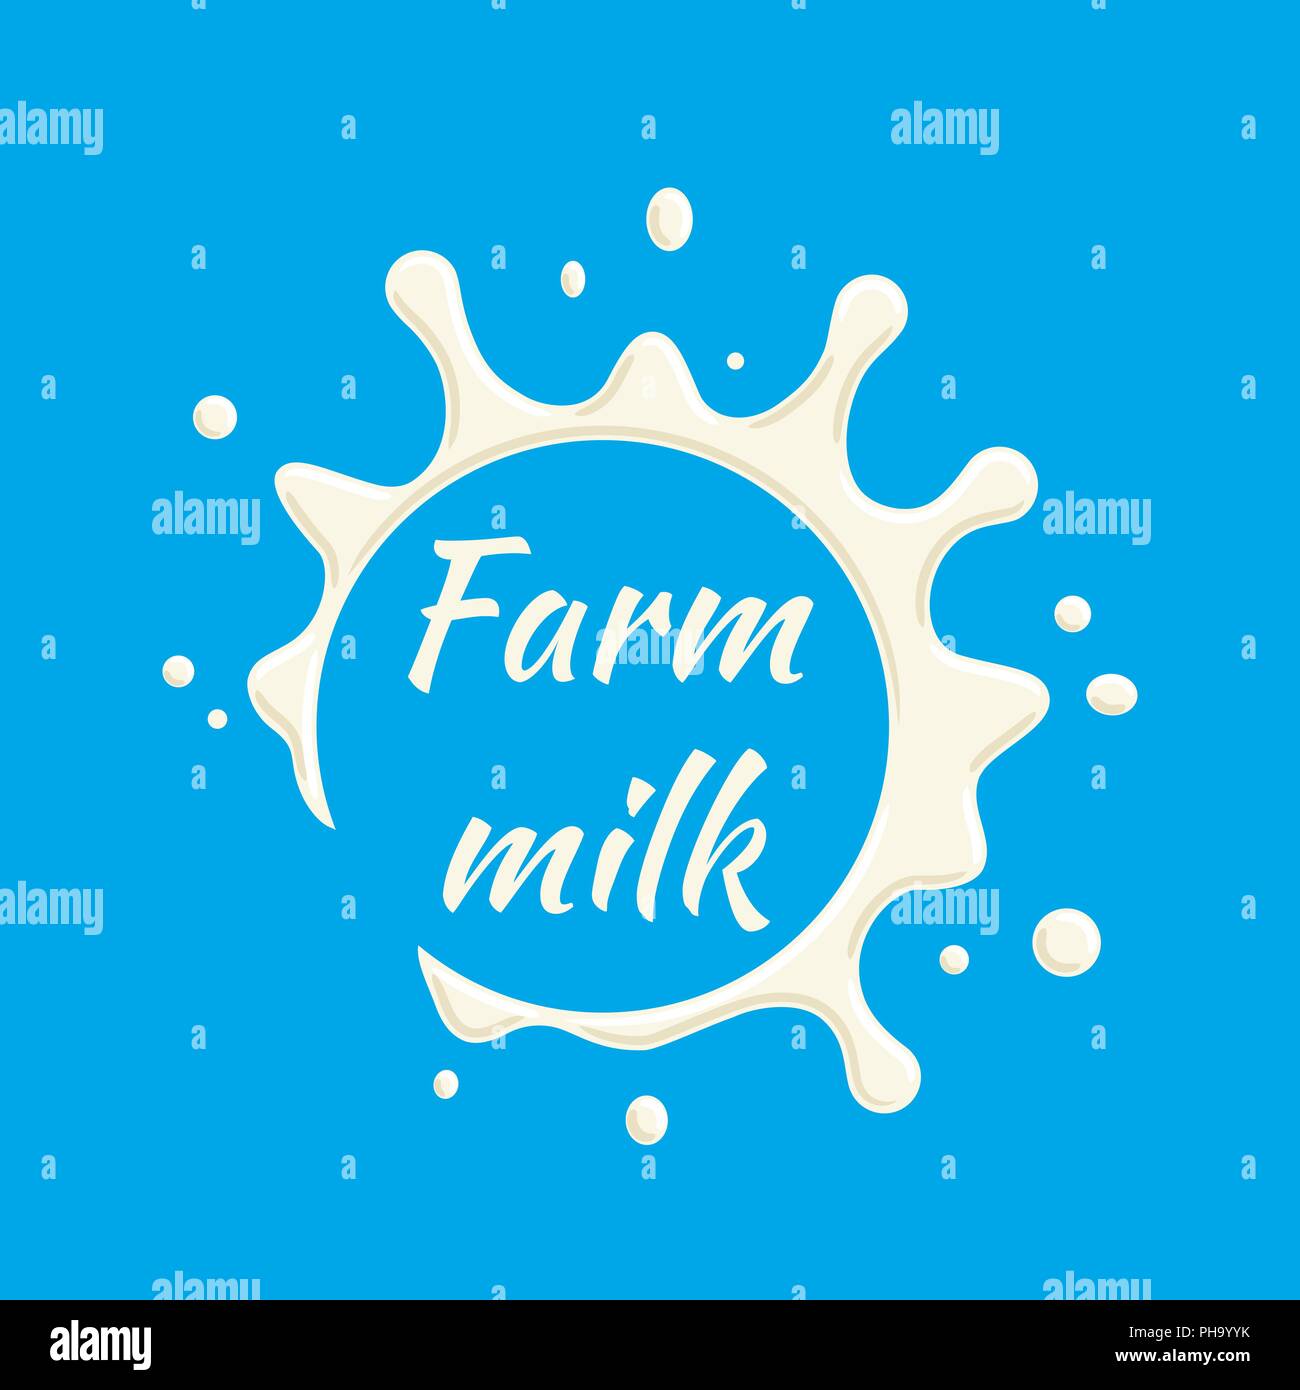 Vecteur de l'étiquette de lait de ferme. Splash de lait et blot design, forme creative illustration. Illustration de Vecteur